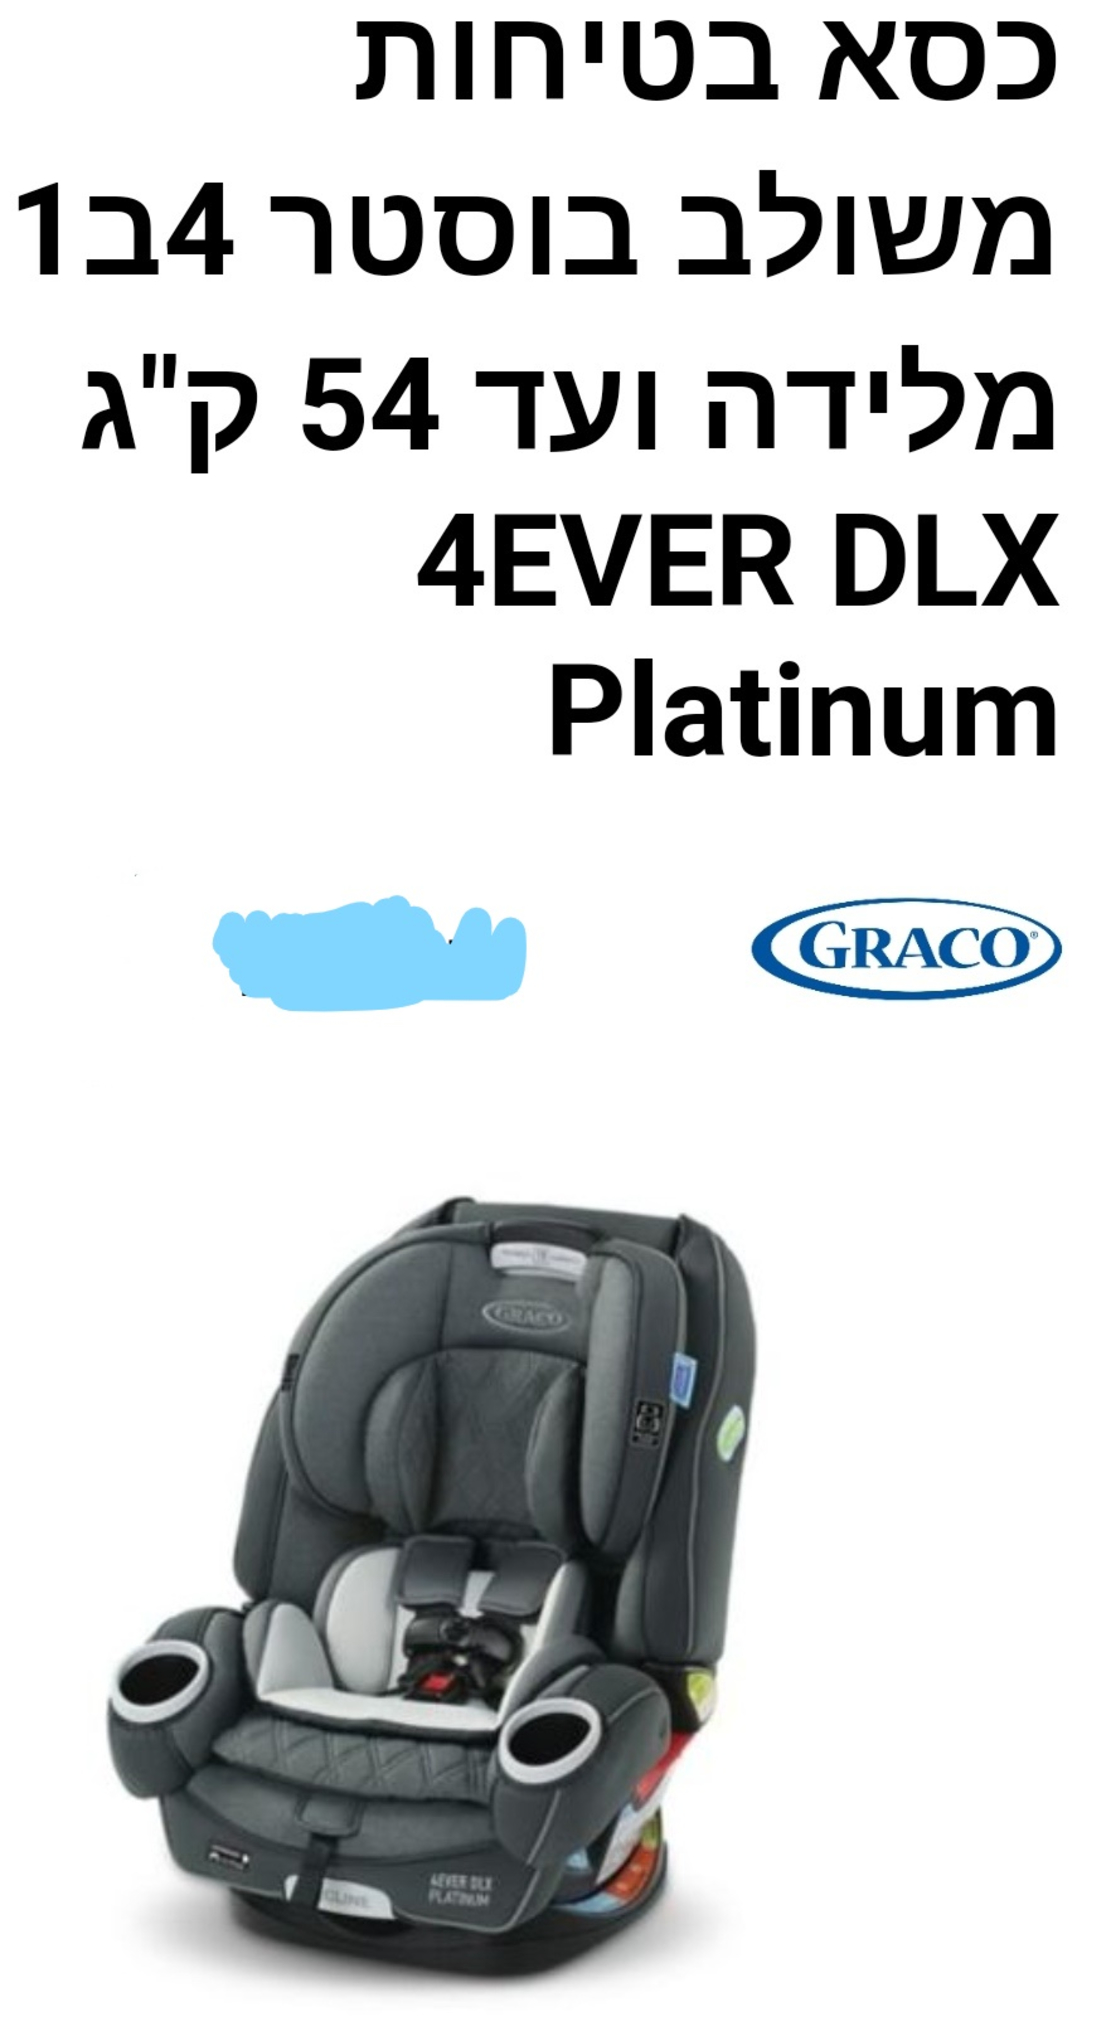 כסא בטיחות - גרקו - פור אוורDLX פלטינום